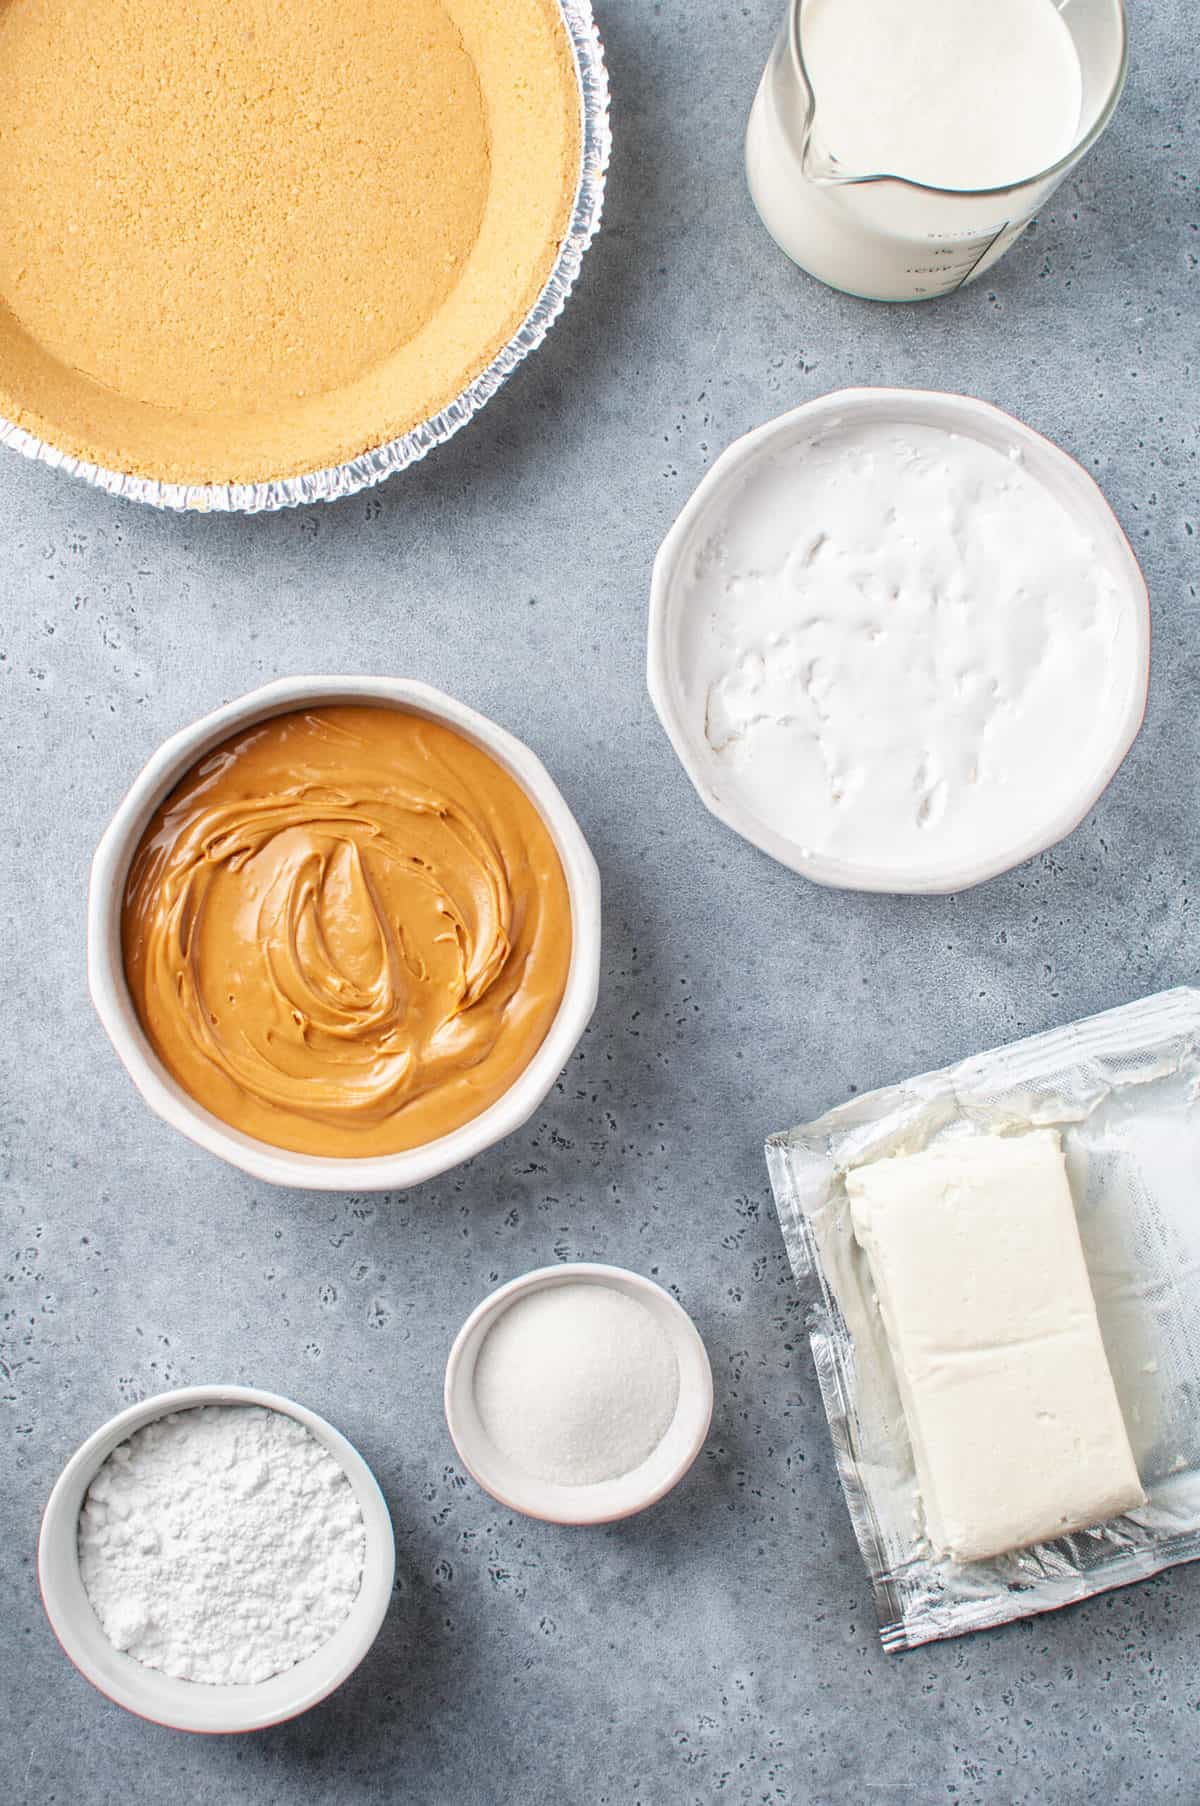 ingredients to make peanut butter fluff pie